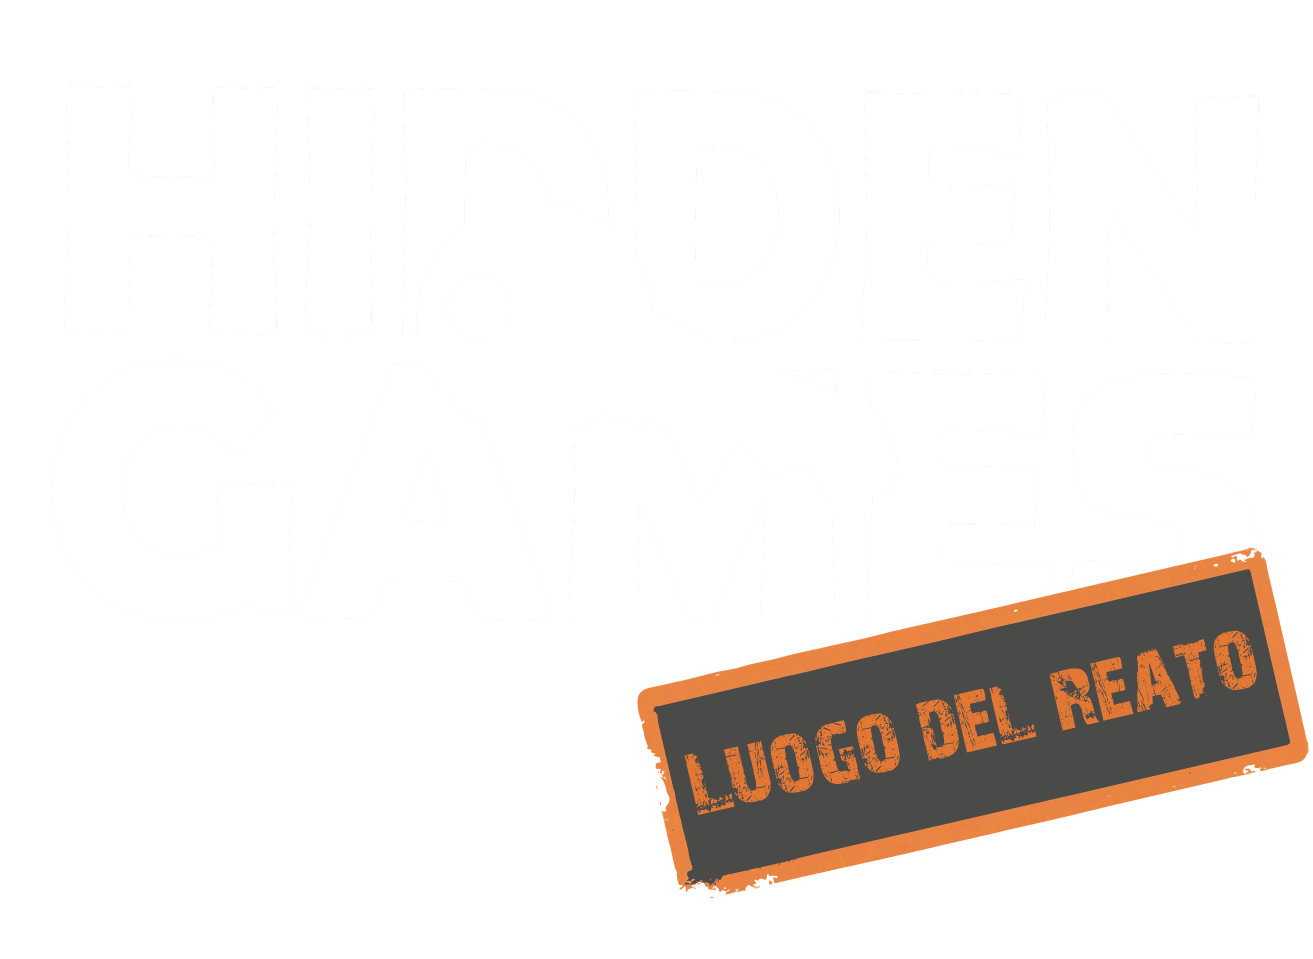 Hidden Games Luogo del Reato - Il 2° caso - IL DIADEMA DI